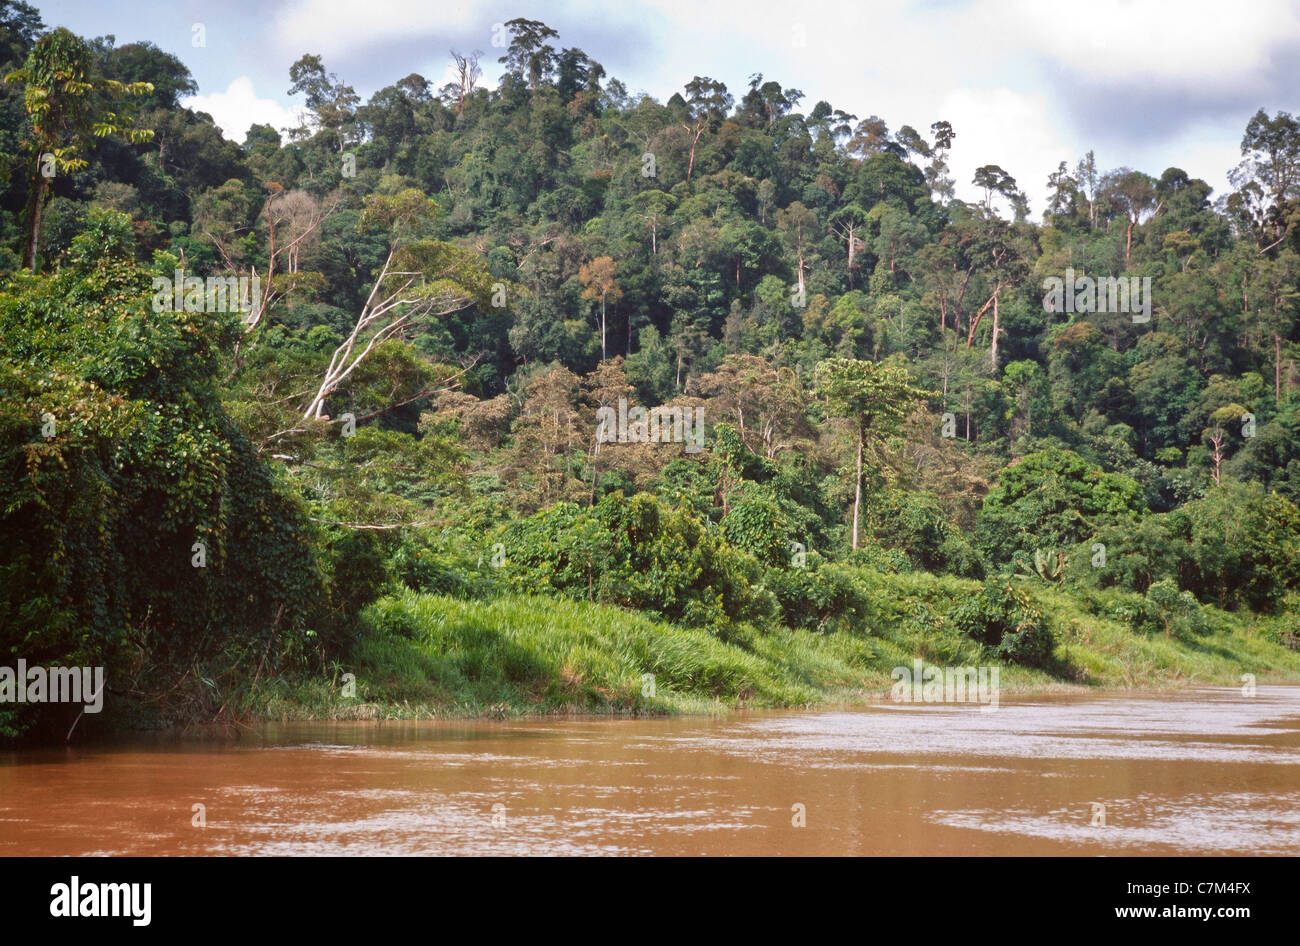 Banco Río la cubierta forestal, el agua del río fangoso, Parque Nacional de Mulu, Sarawak, Borneo, Malasia Oriental Foto de stock